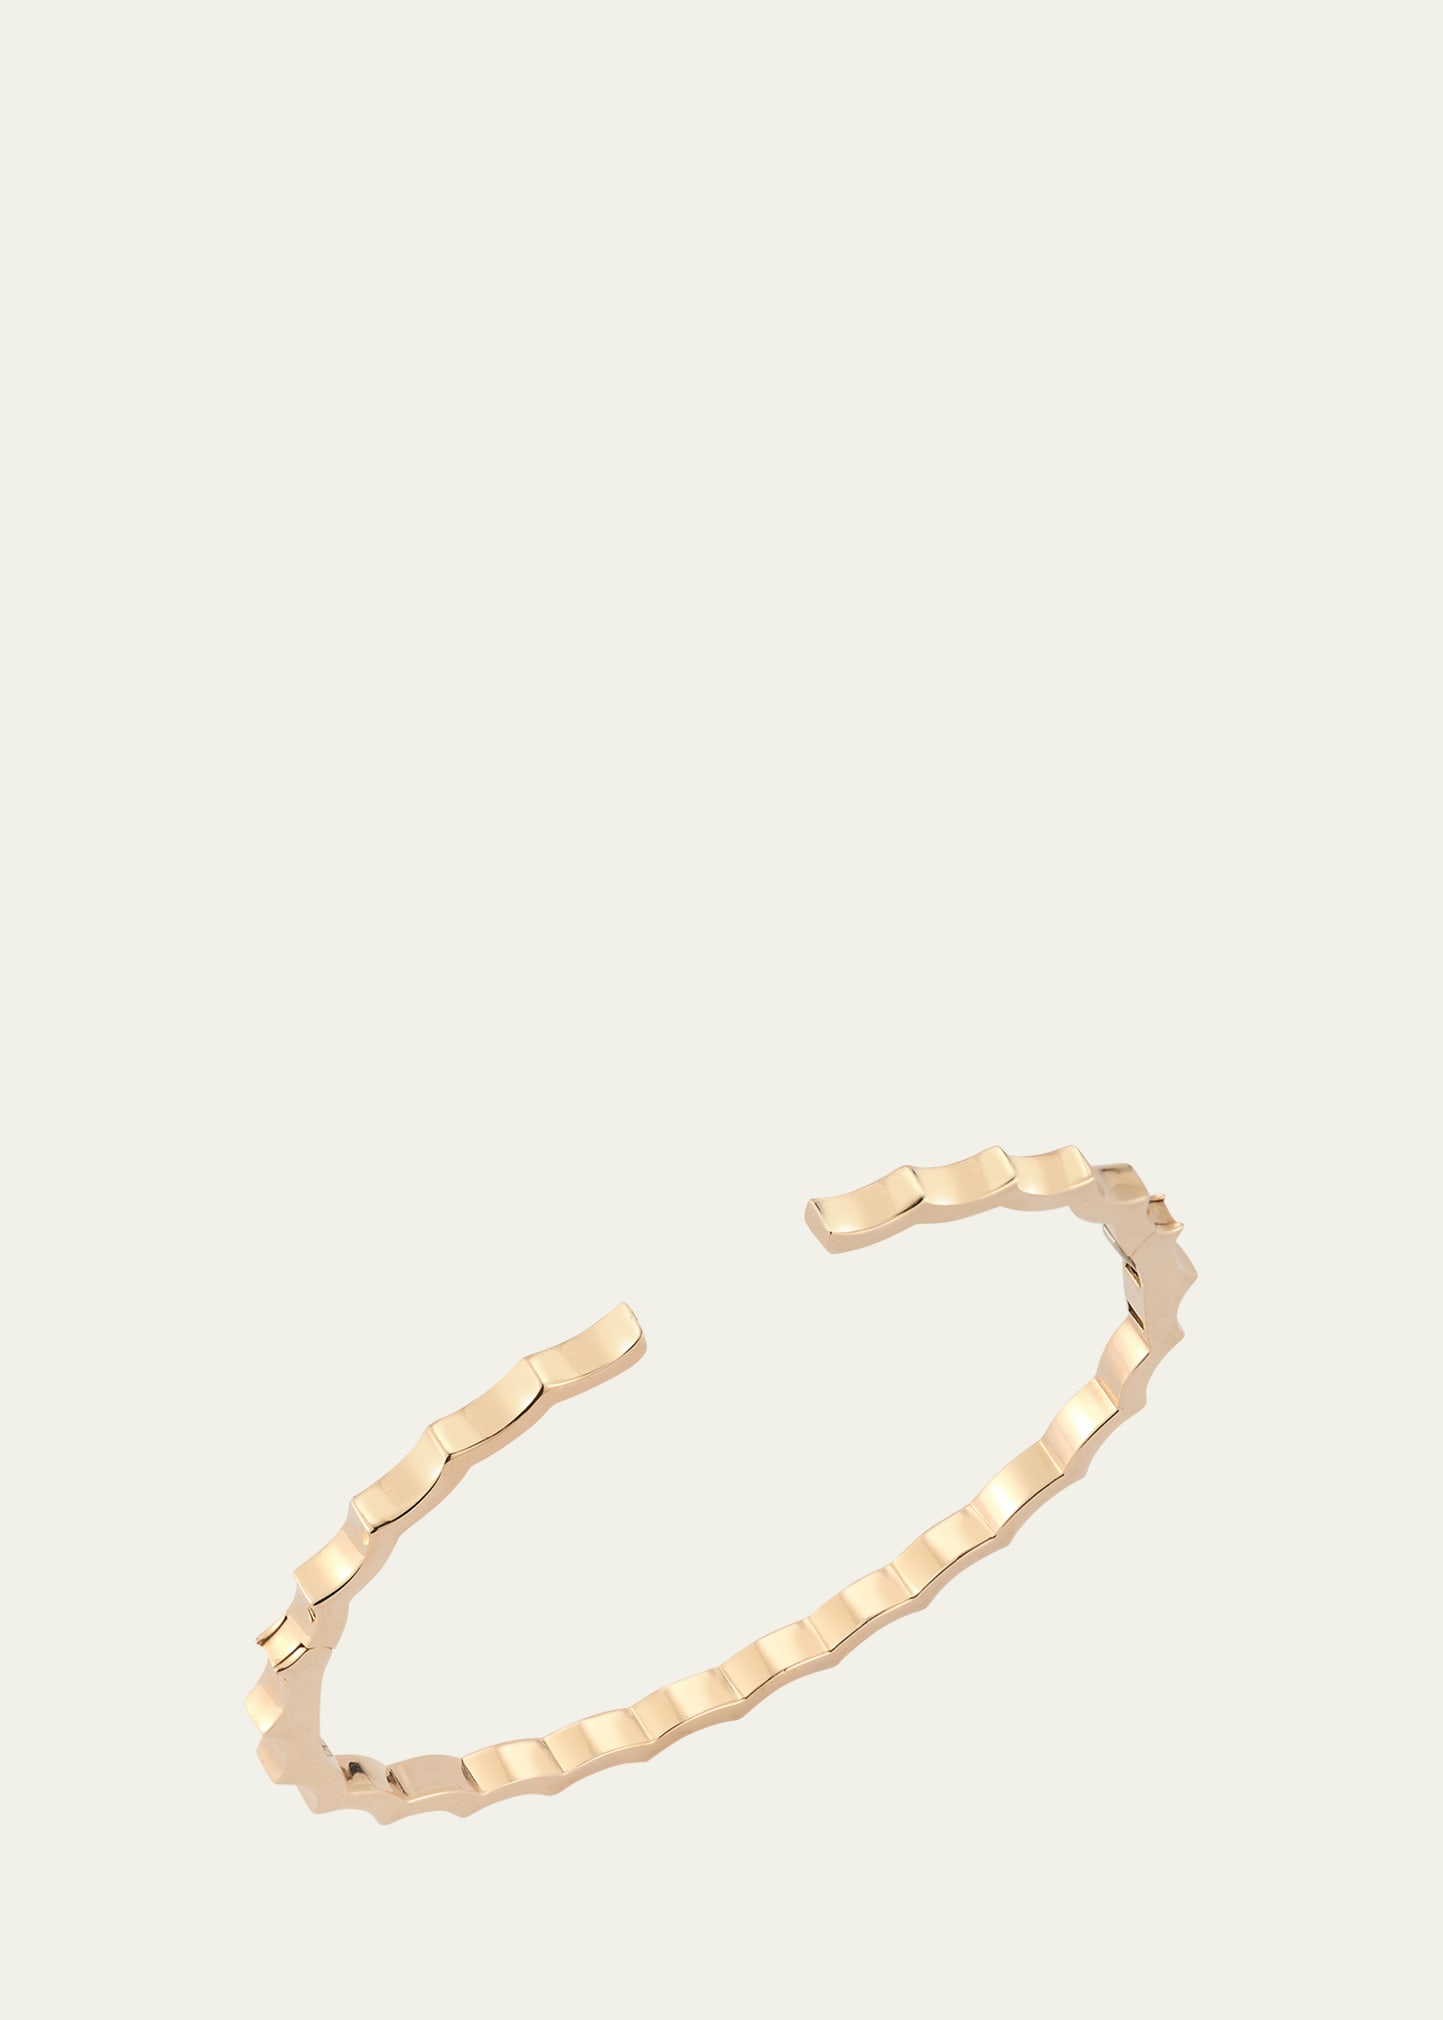 Clive 18K Rose Gold Scalloped Hinge Bracelet, Size 6.5